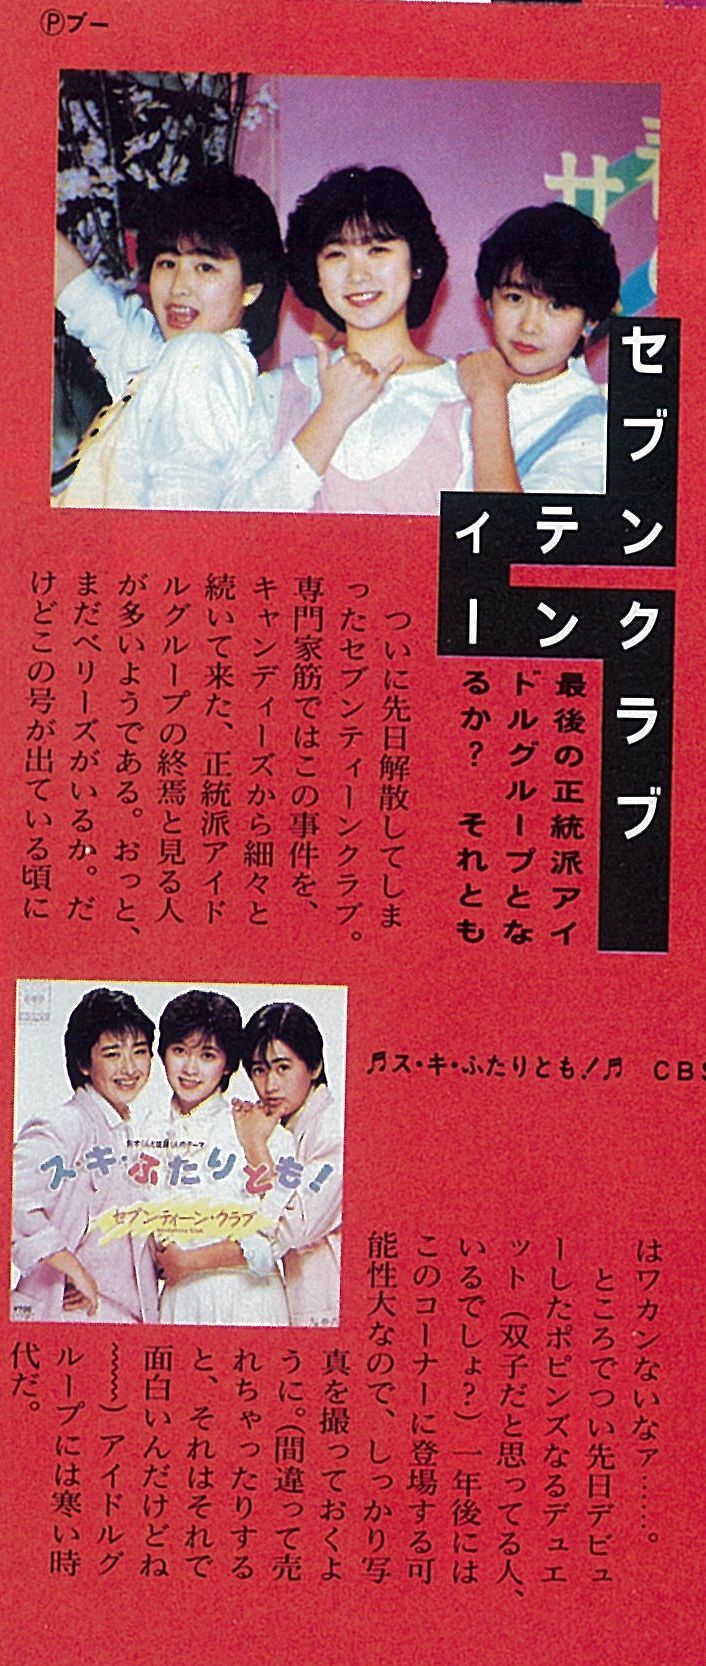 １９８６年 おニャン子クラブへの移籍 天野春子と鈴鹿ひろ美がいた時代